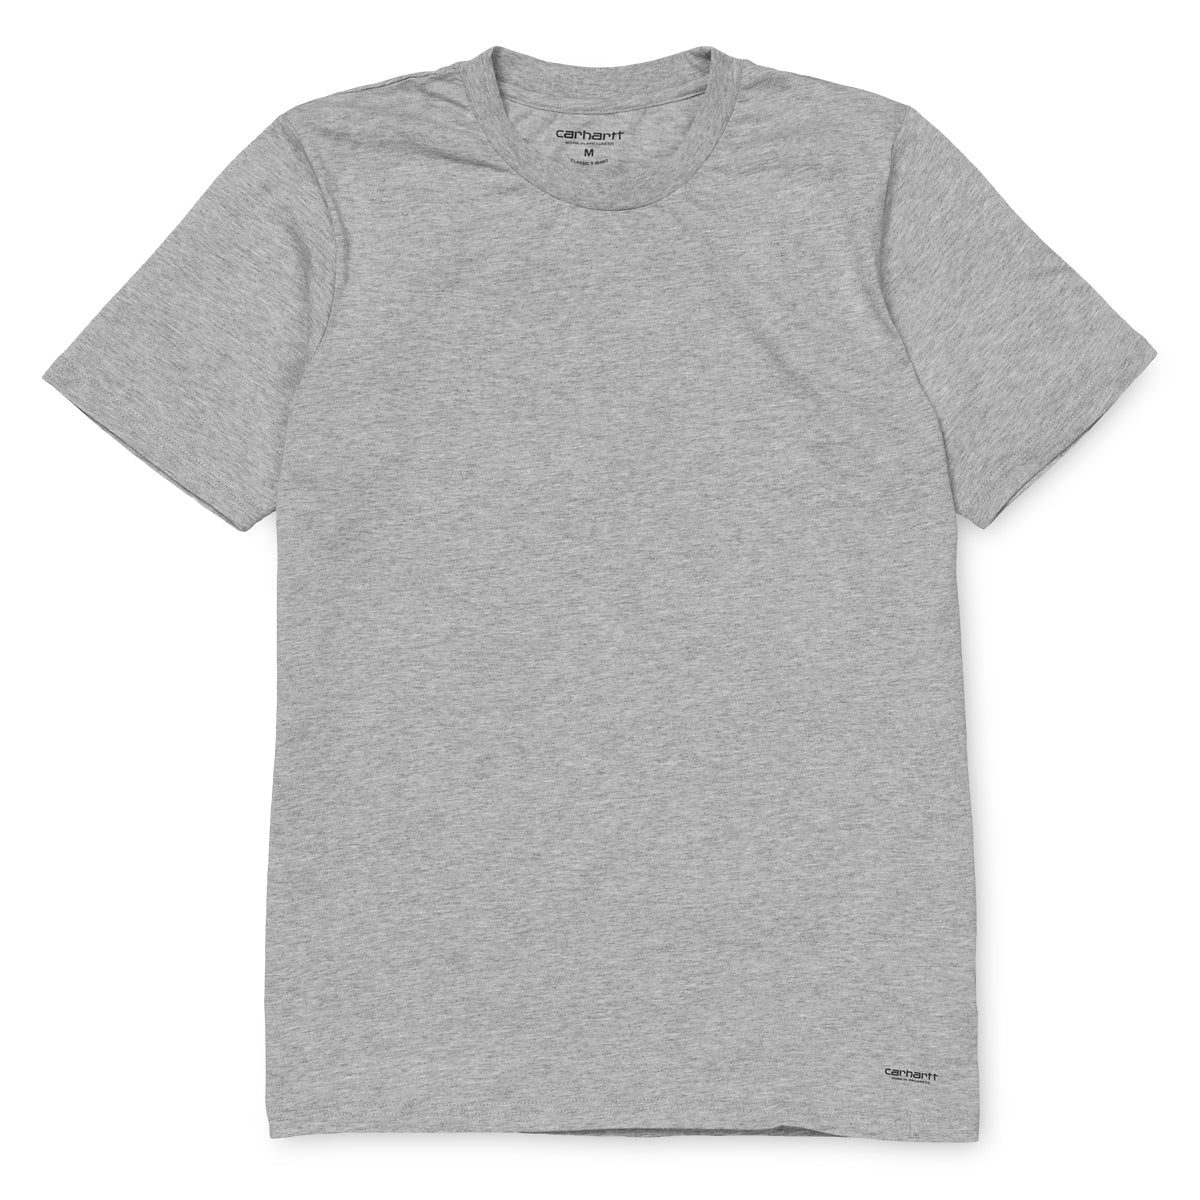 Carhartt Grey T-shirt (2 pack) Standard Crew Neck